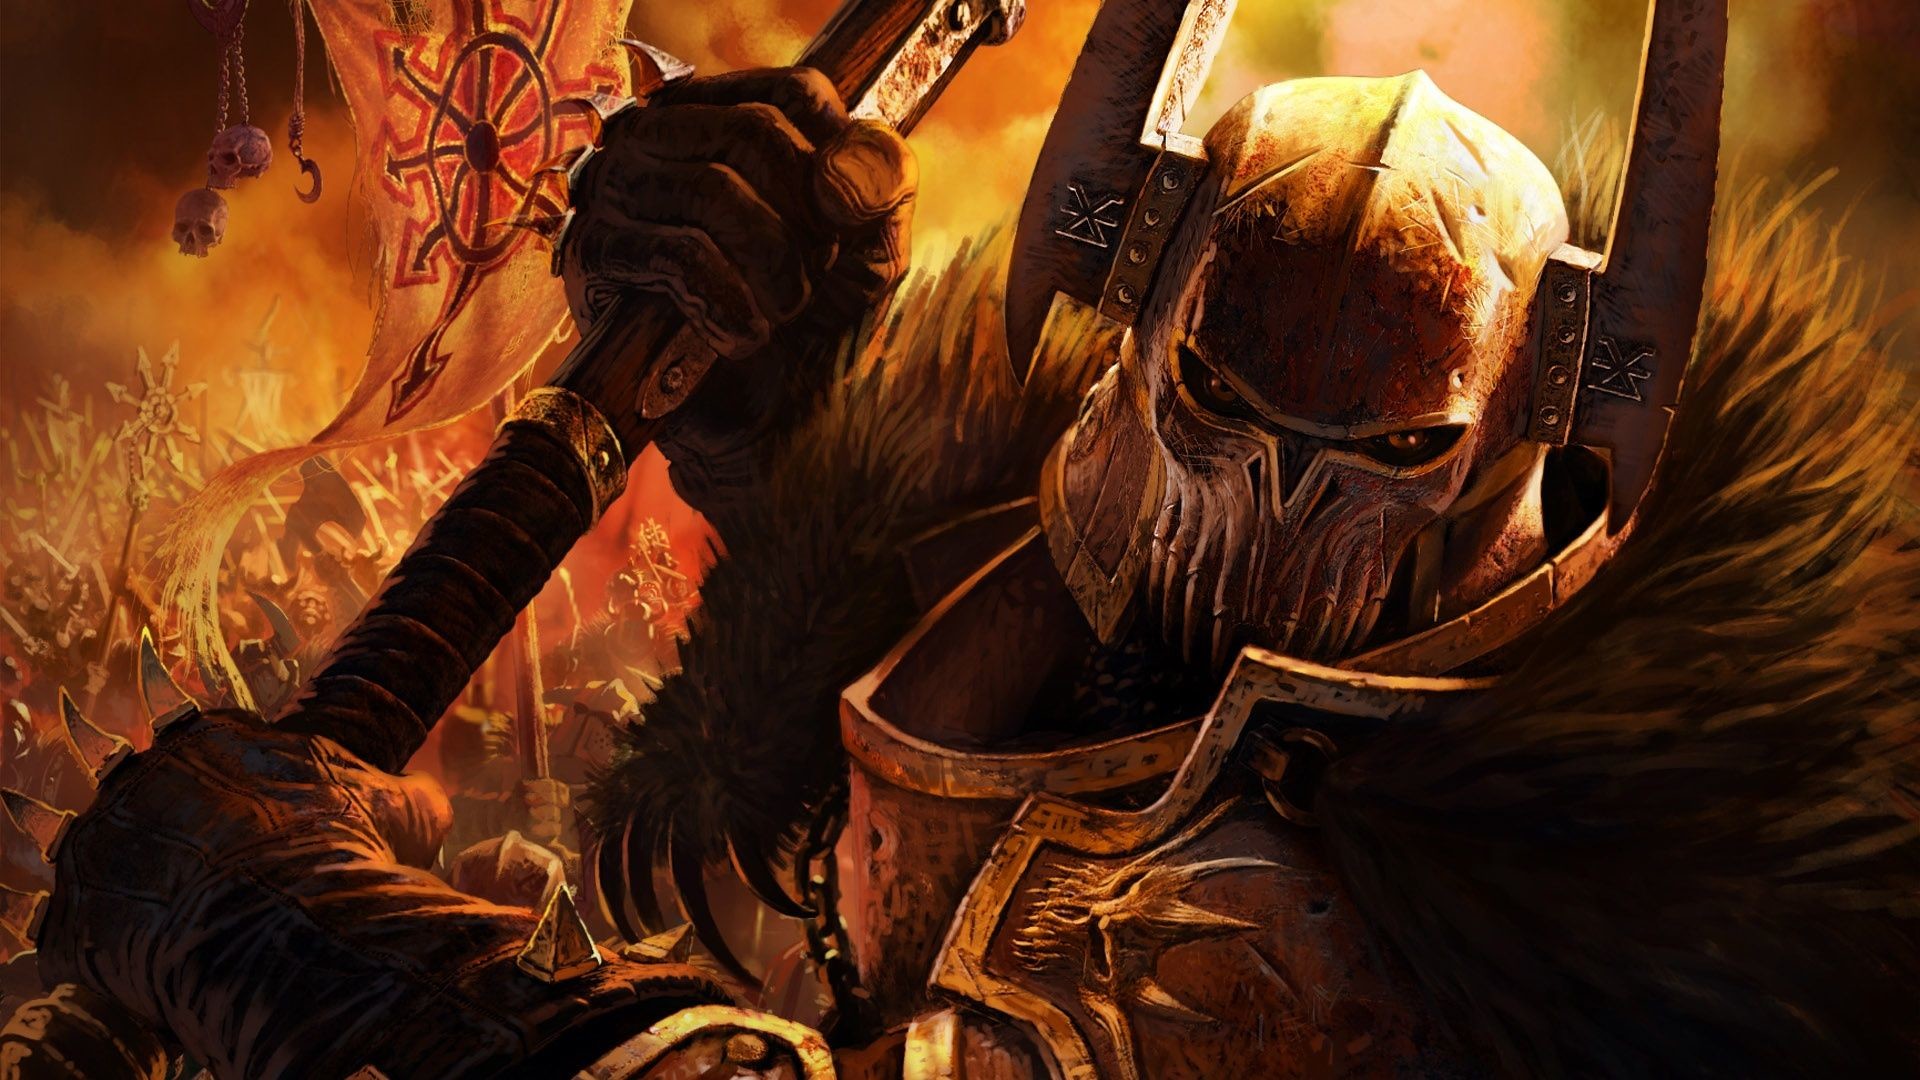 Dragon Warrior Wallpaper Hd - War Hammer Chaos , HD Wallpaper & Backgrounds